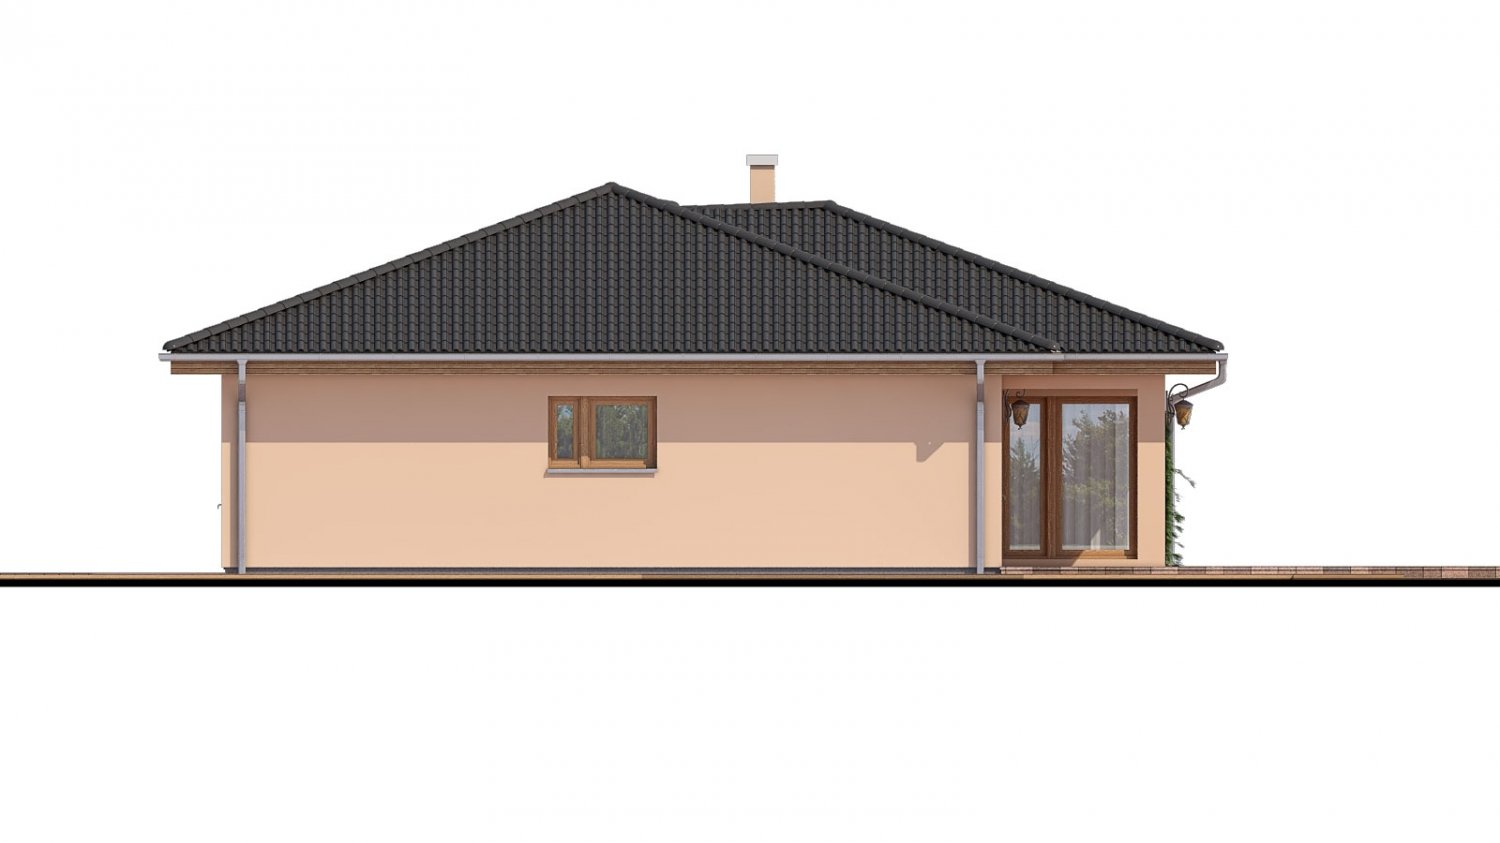 Pohľad 2. - Projekt domu s terasou. Zpracovaný iv 3d virtuální realitě.